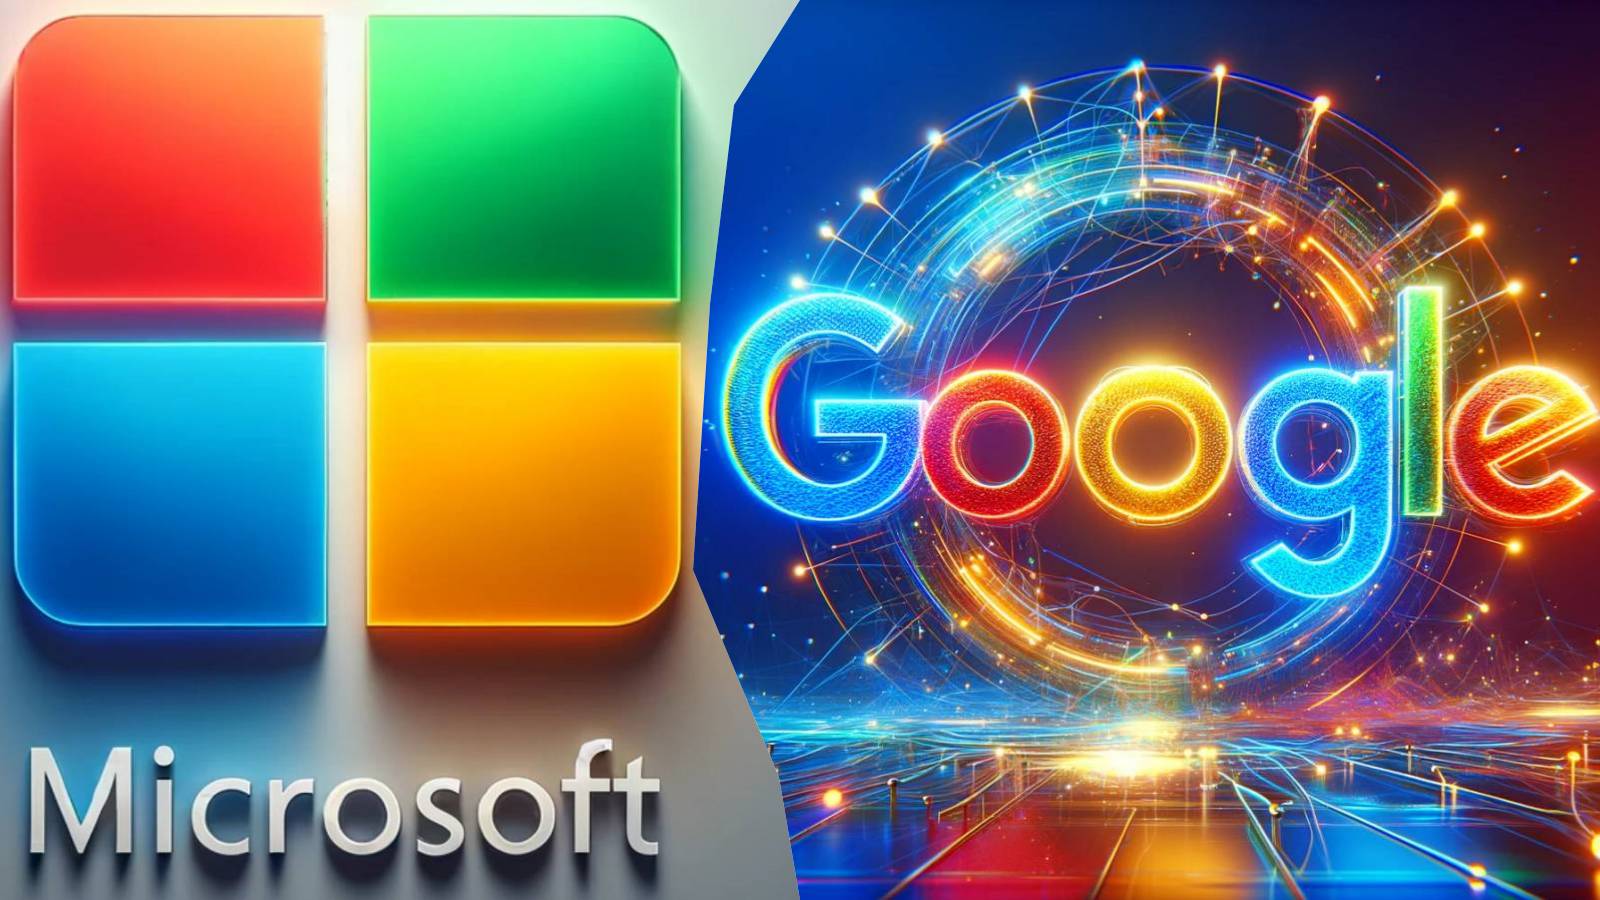 Microsoft erhebt harte Vorwürfe gegen Google und fordert die Intervention der Europäischen Kommission